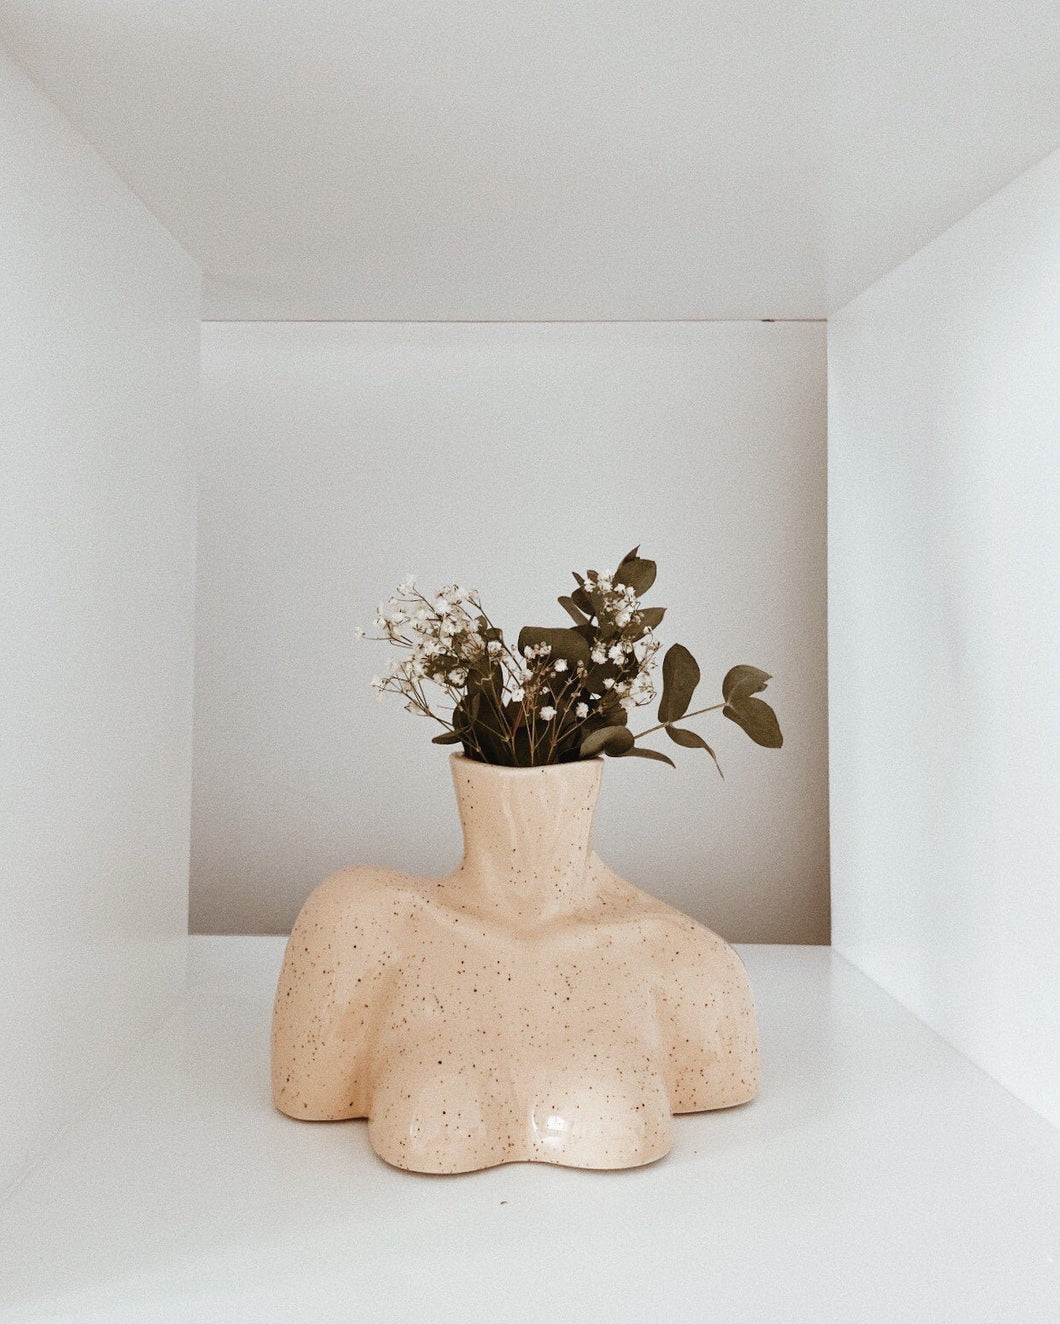 Ceramic Torso Vase